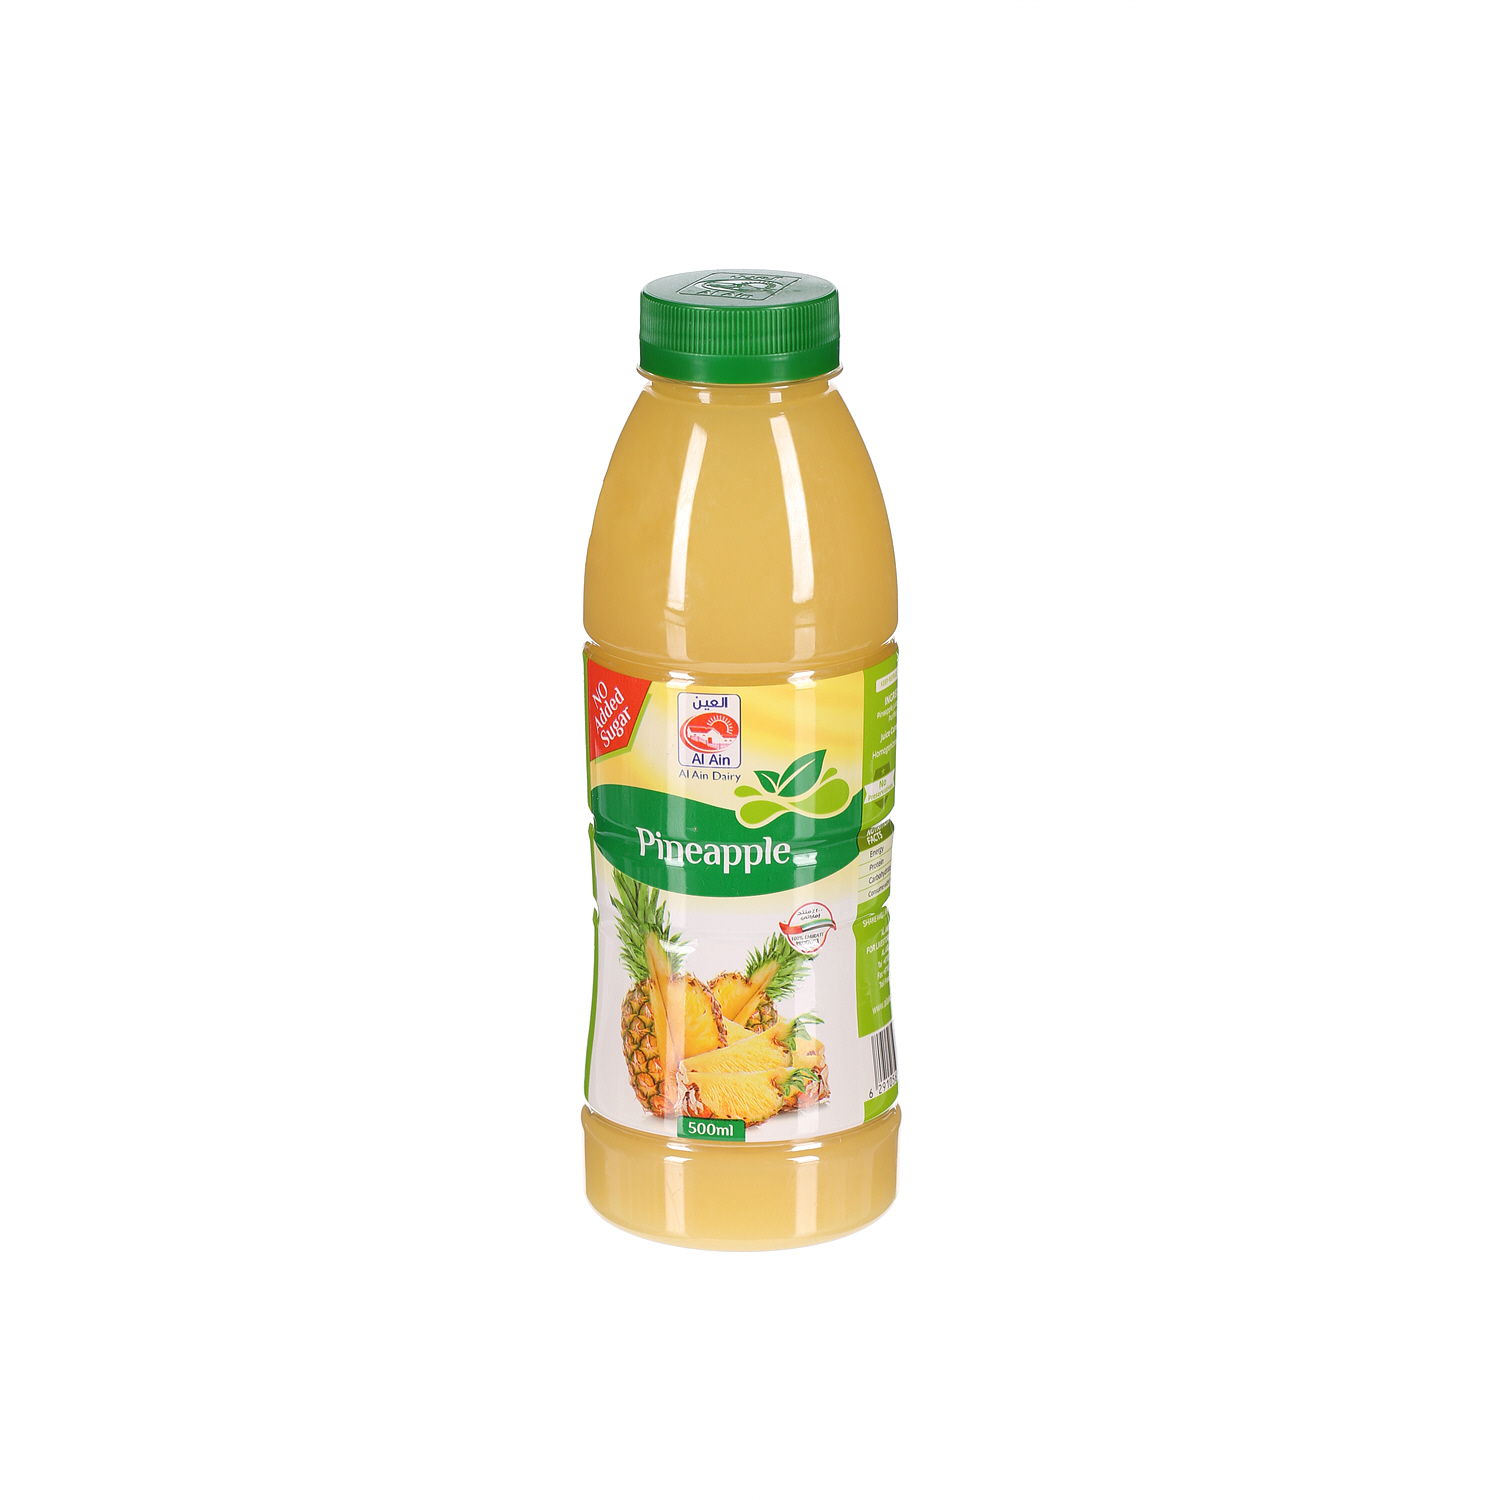 Al Ain Pineapple Juice 500 ml